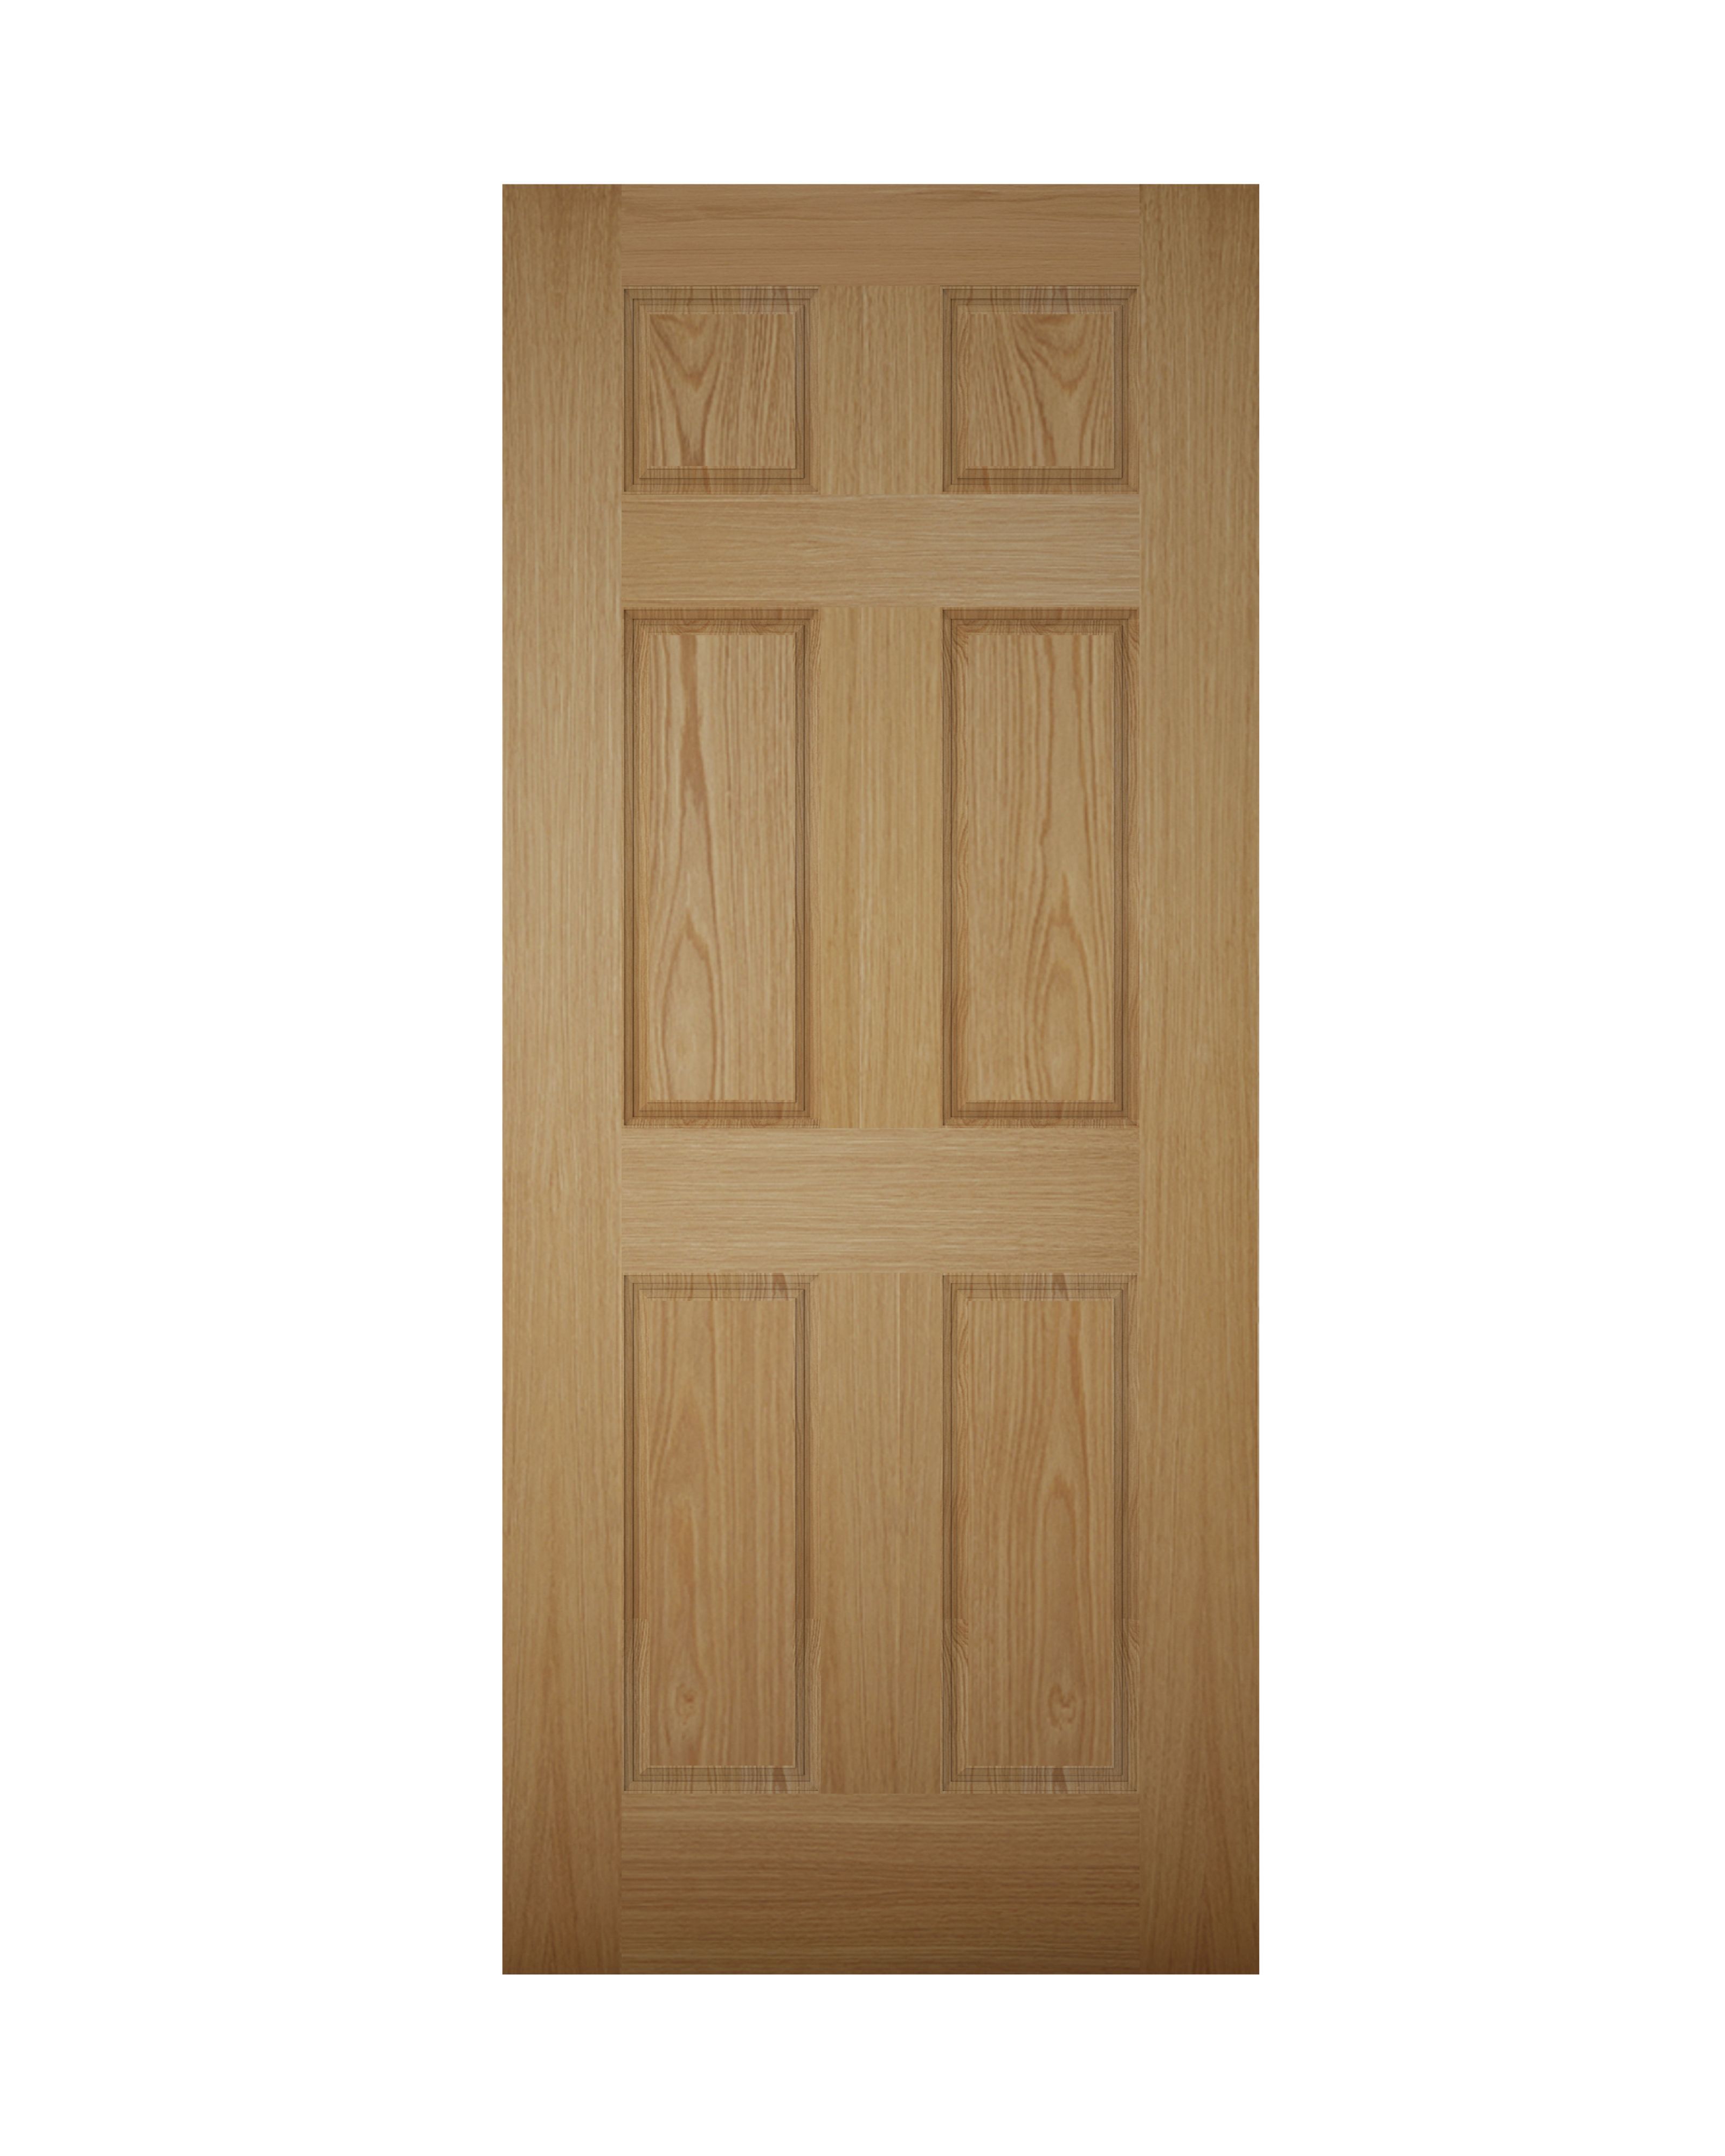 6 panel White oak veneer Left & RHed Front Door set, (H)2074mm (W)856mm